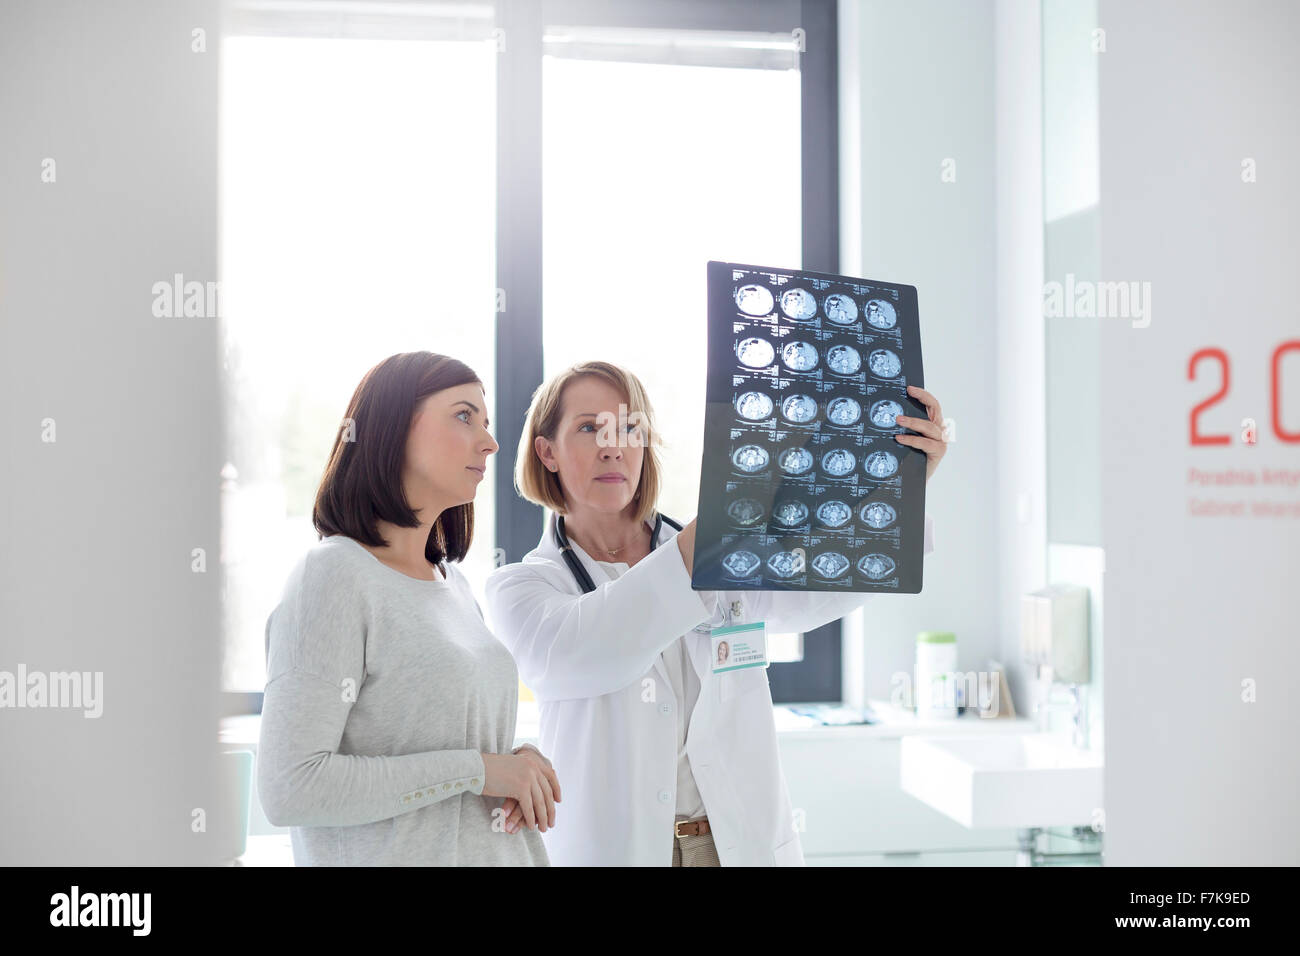 Médecin et patient l'examen sérieux des rayons x en salle d'examen Banque D'Images